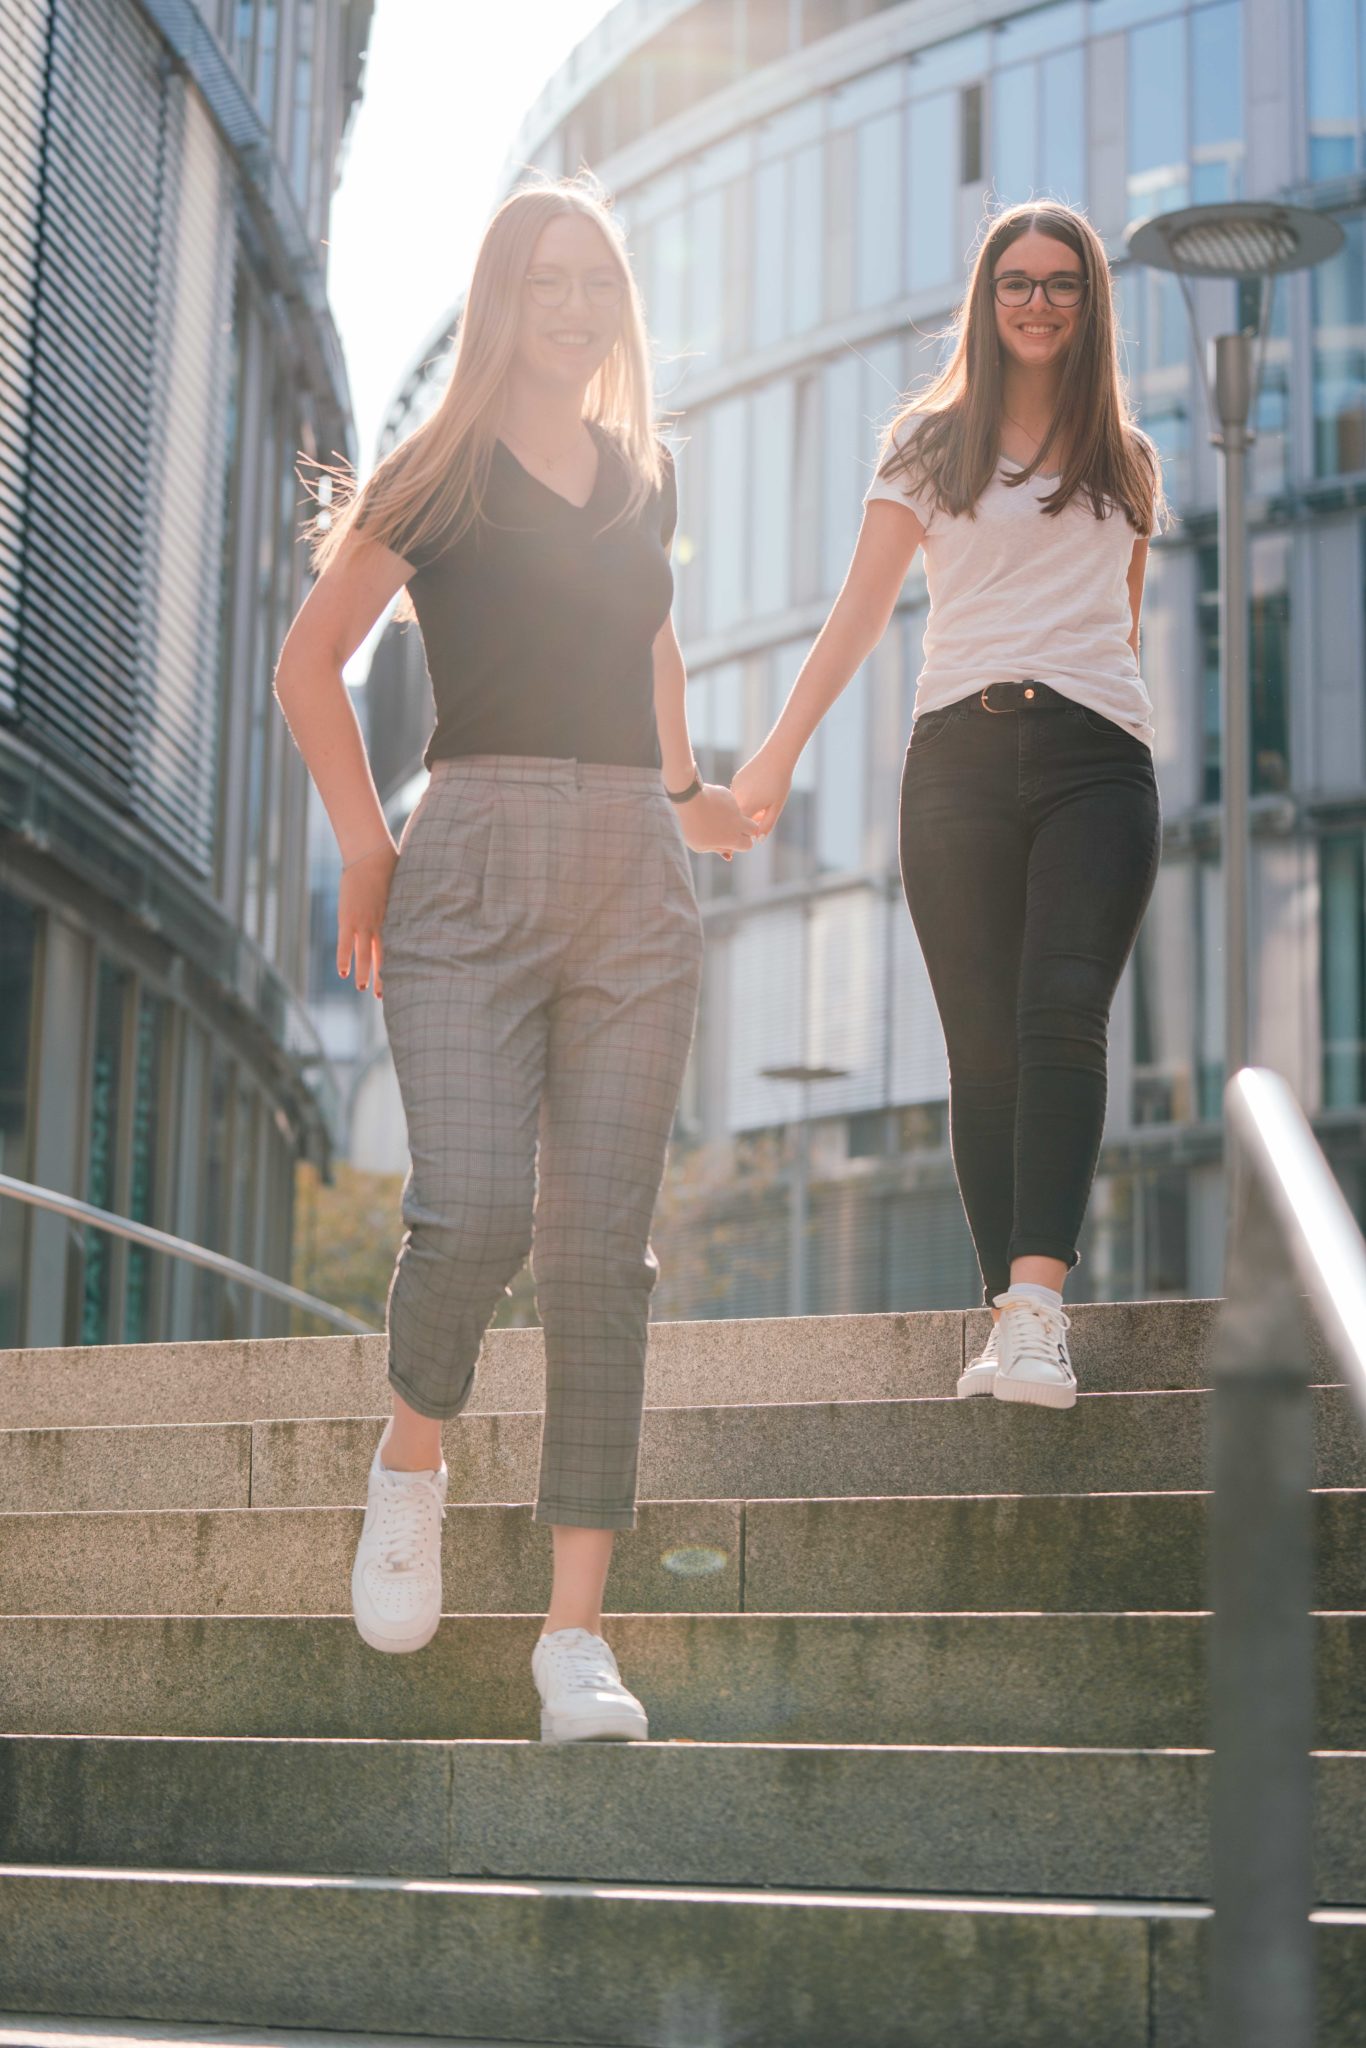 Fotoshooting für Freunde zwei Freundinnen Treppe